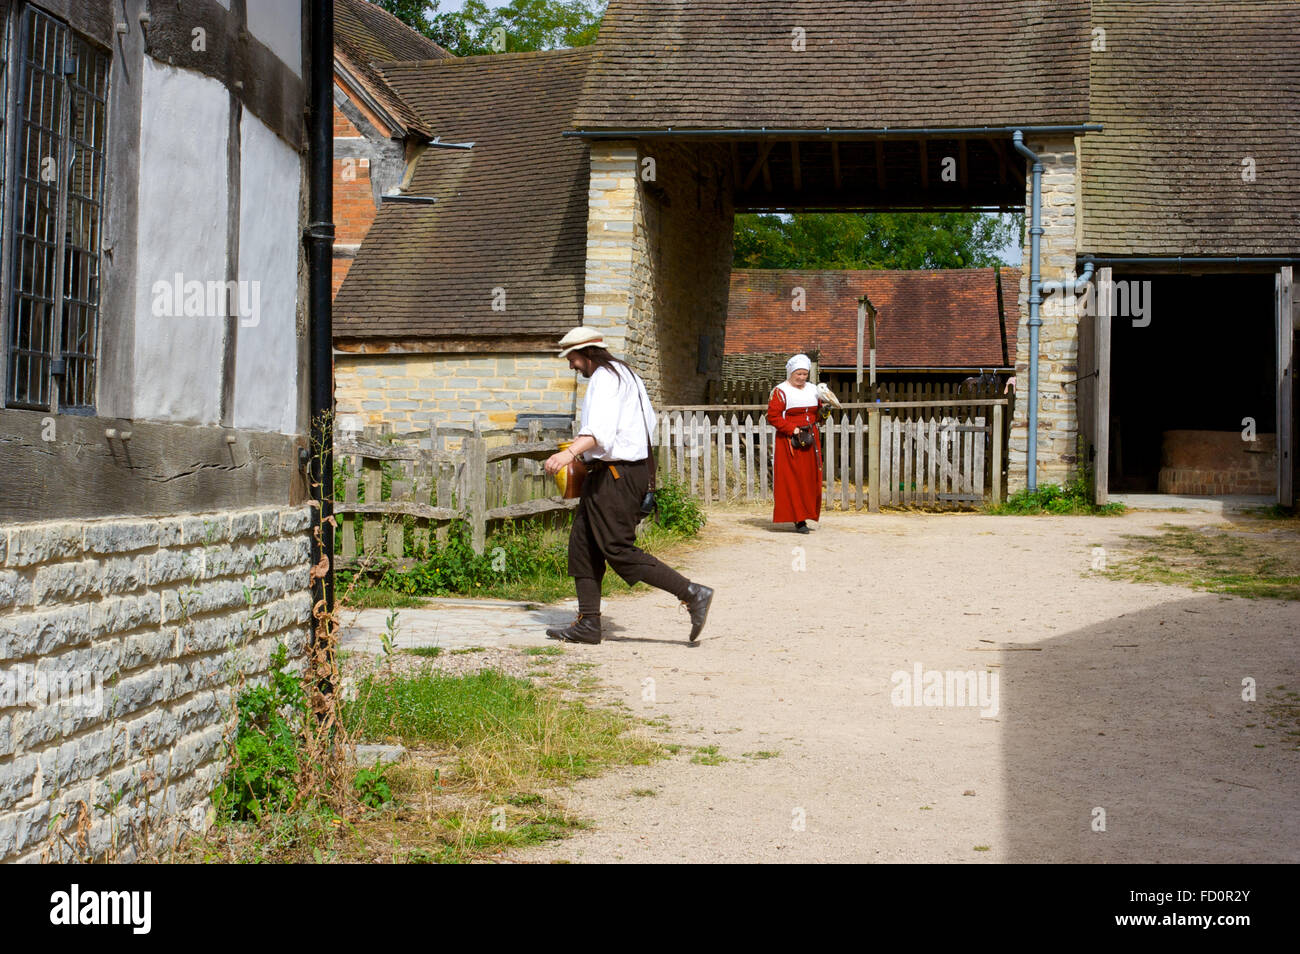 Los turistas fuera de Mary Arden’s Farm una vez la casa de William Shakespeare en Stratford-upon-Avon. Foto de stock